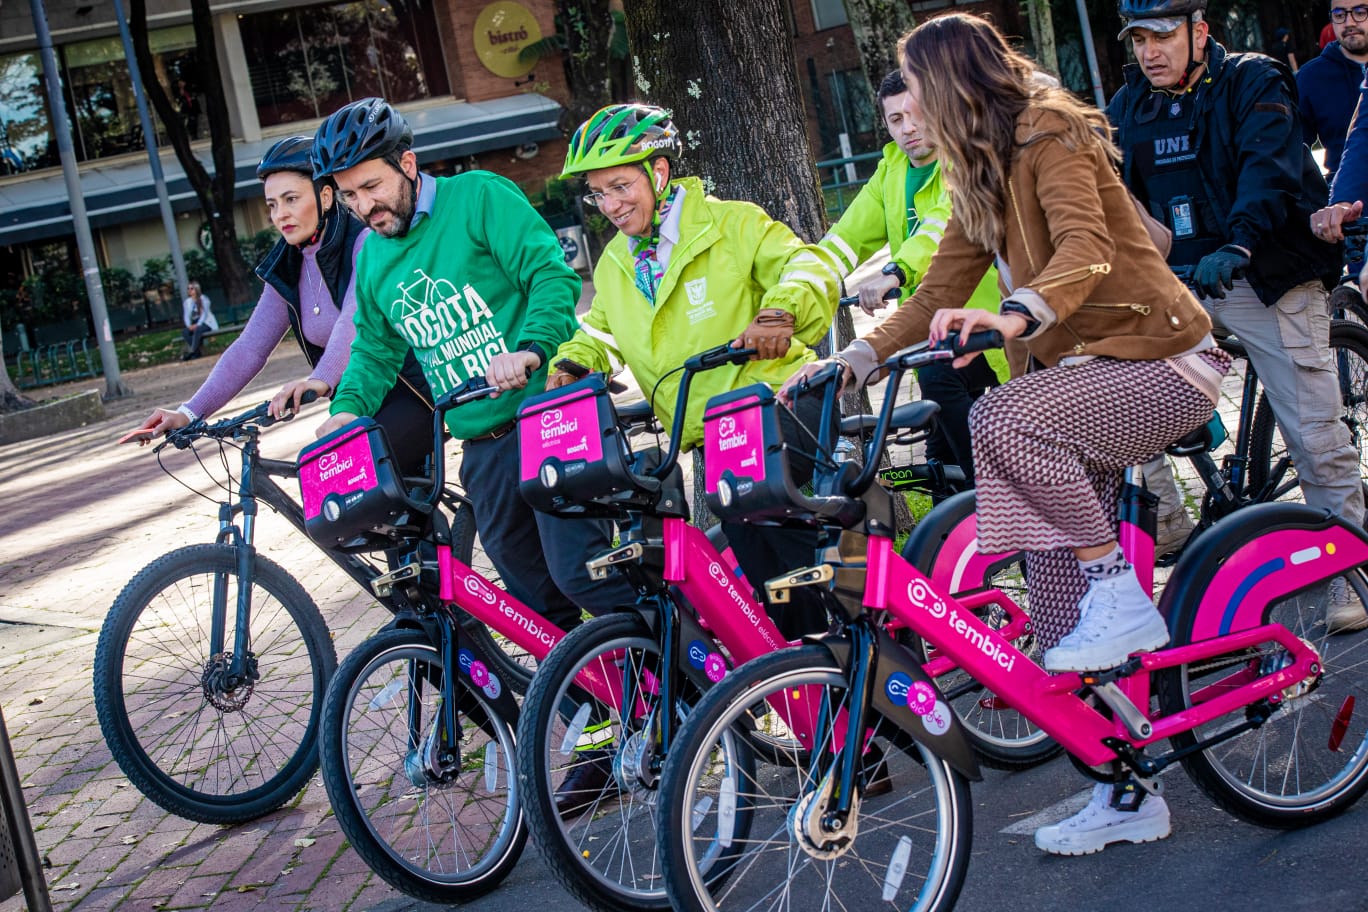 ¡Otro sueño cumplido para la ciudad! Bogotá tendrá su sistema de bicicletas compartidas: serán 300 estaciones y 3.300 bicis públicas